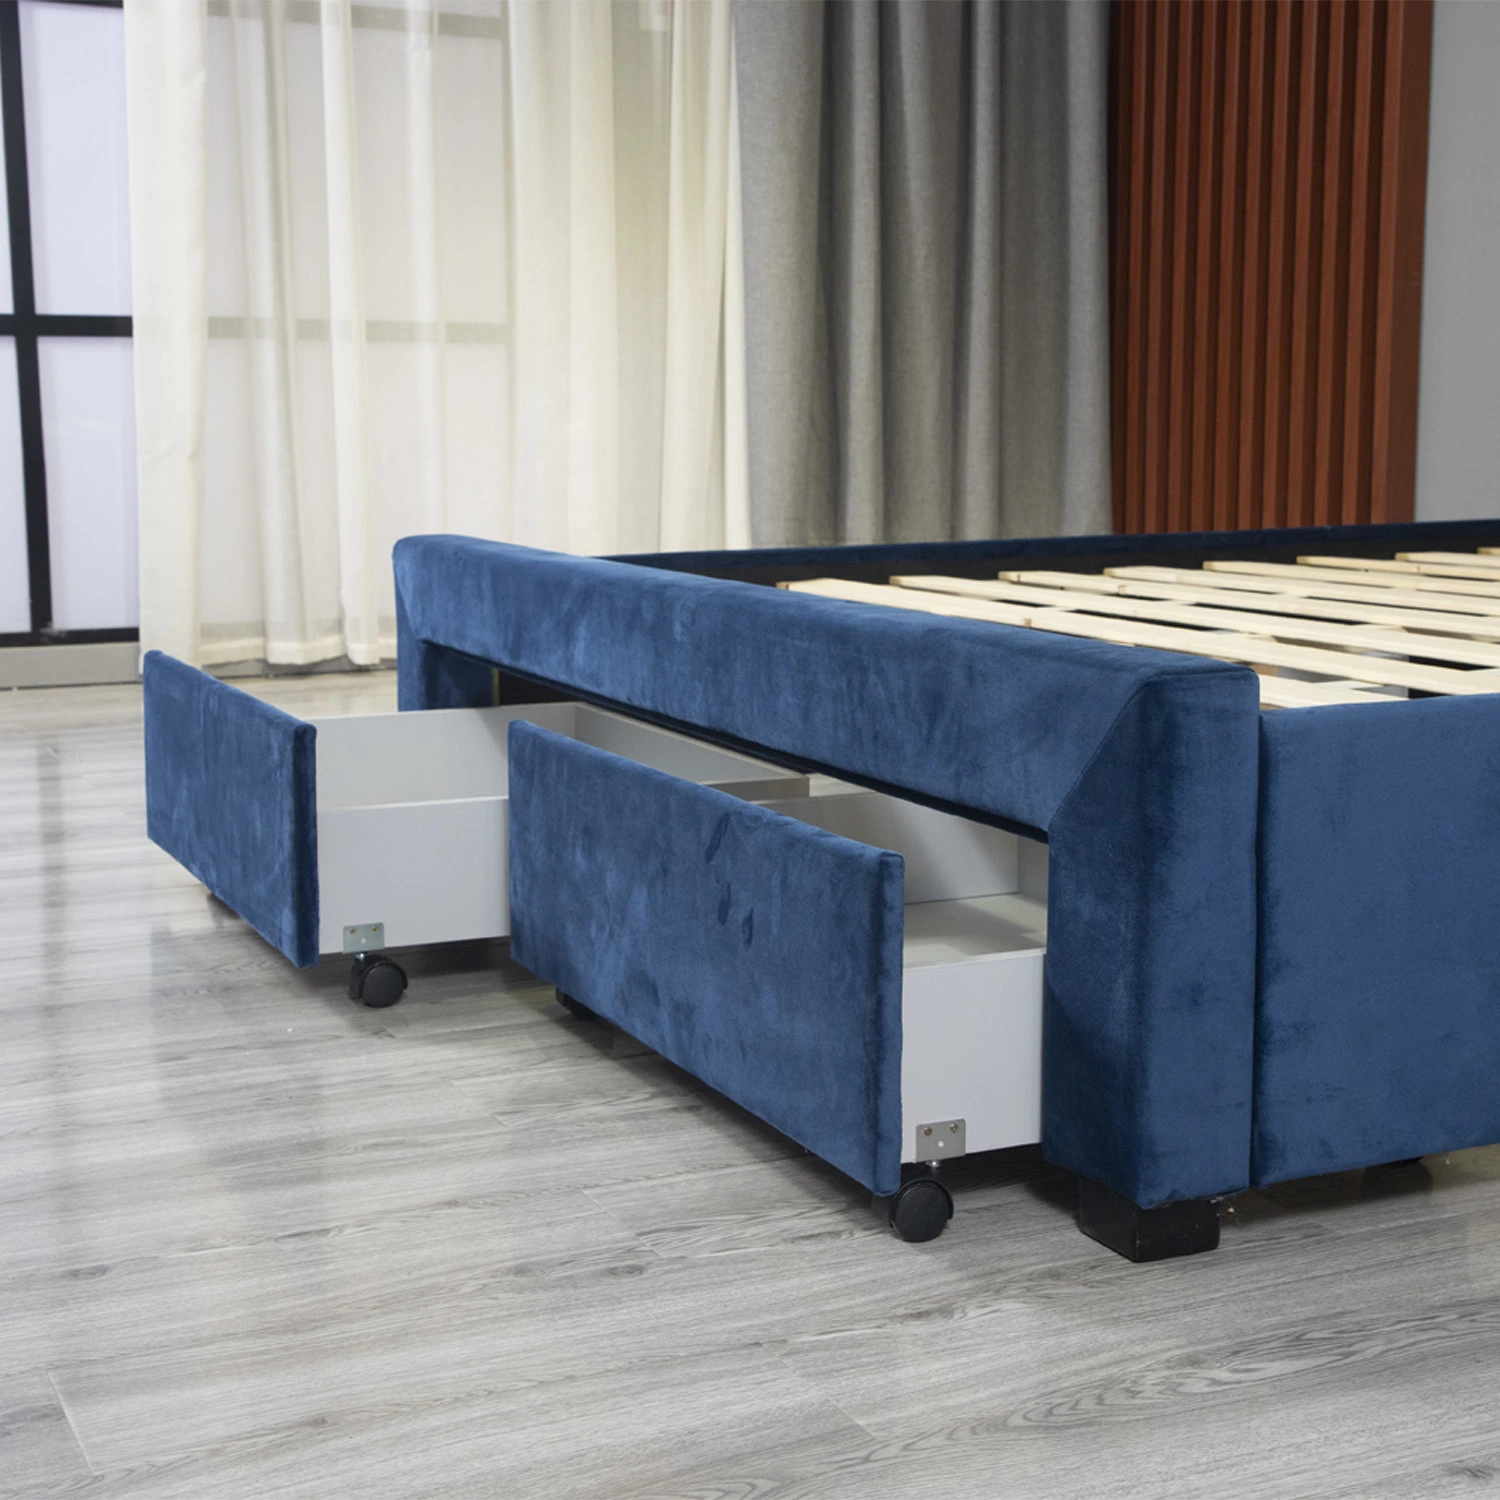 Se desarrolló el desmontaje Huayang mayorista China personalizados muebles modernos.